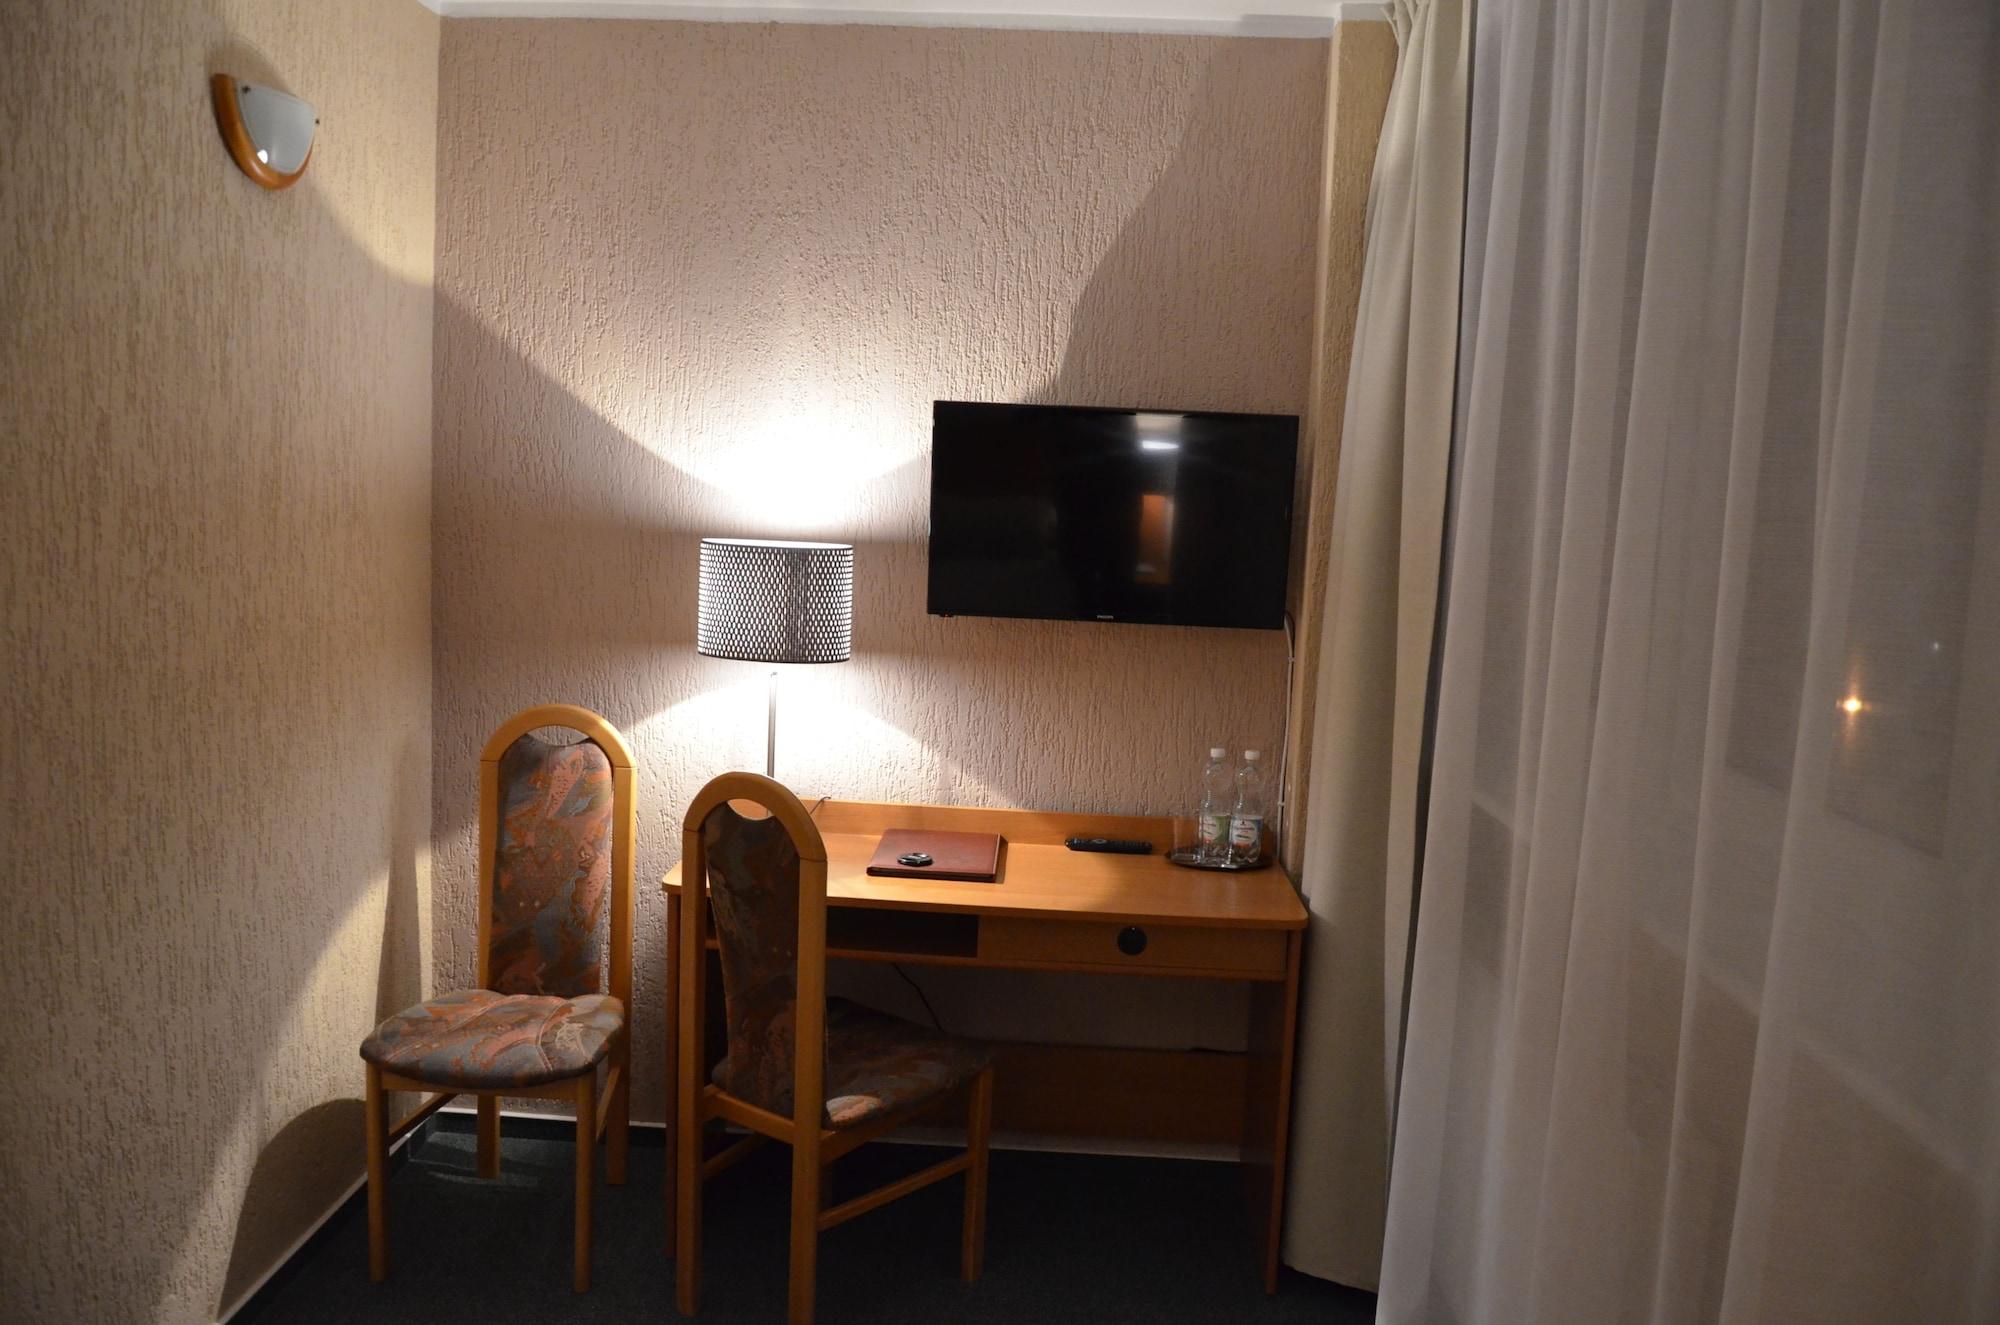 Hotel Gromada Poznań Kültér fotó